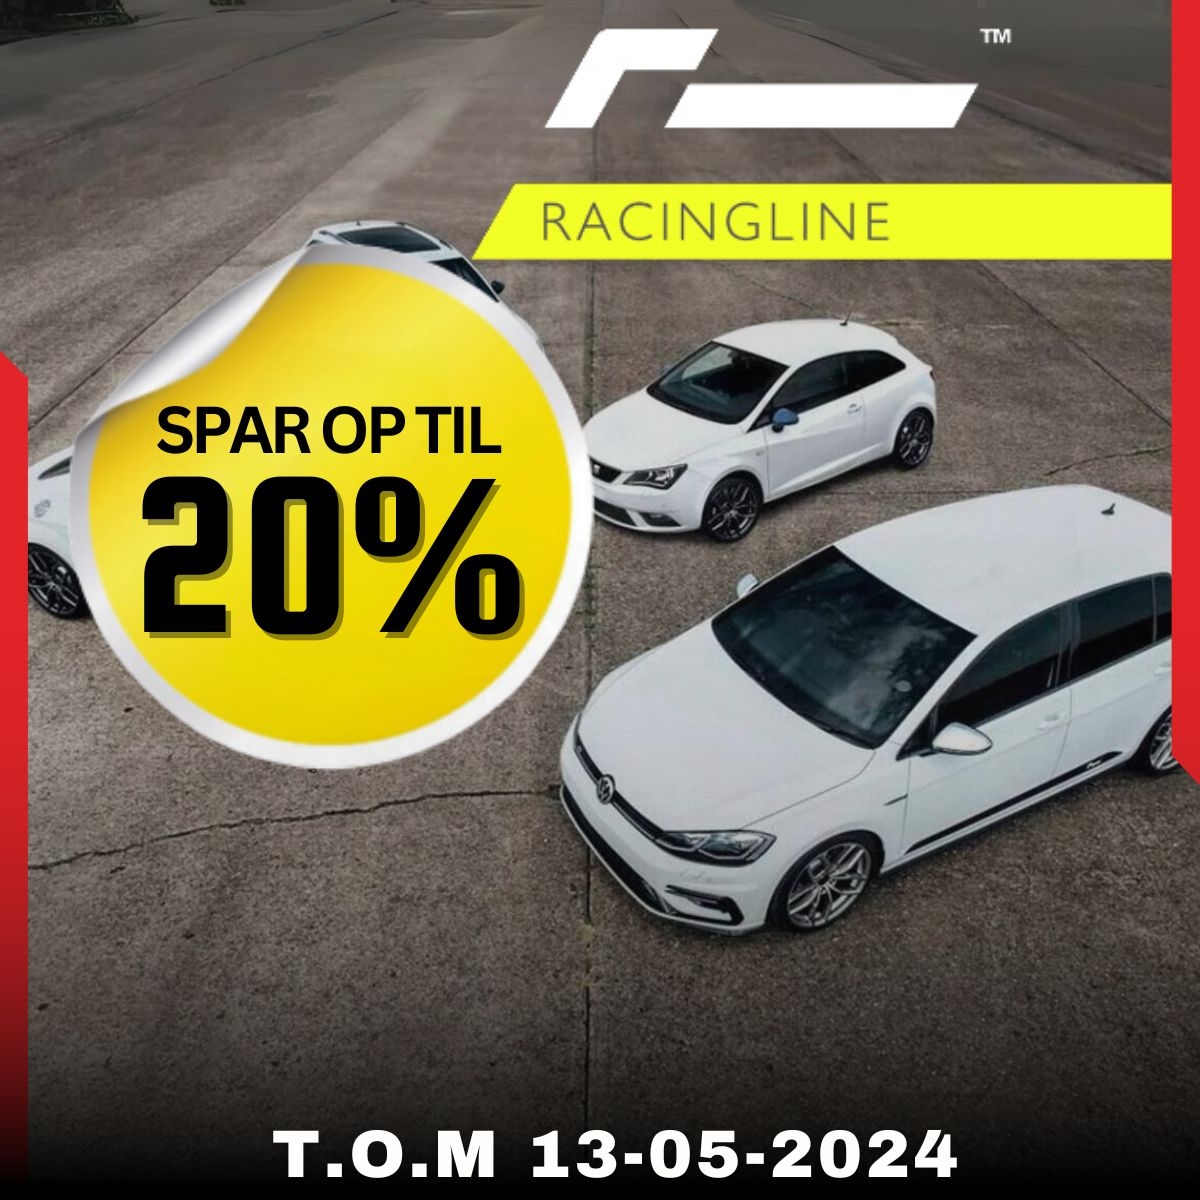 Spart op til 20% på Racingline og gjel bilen